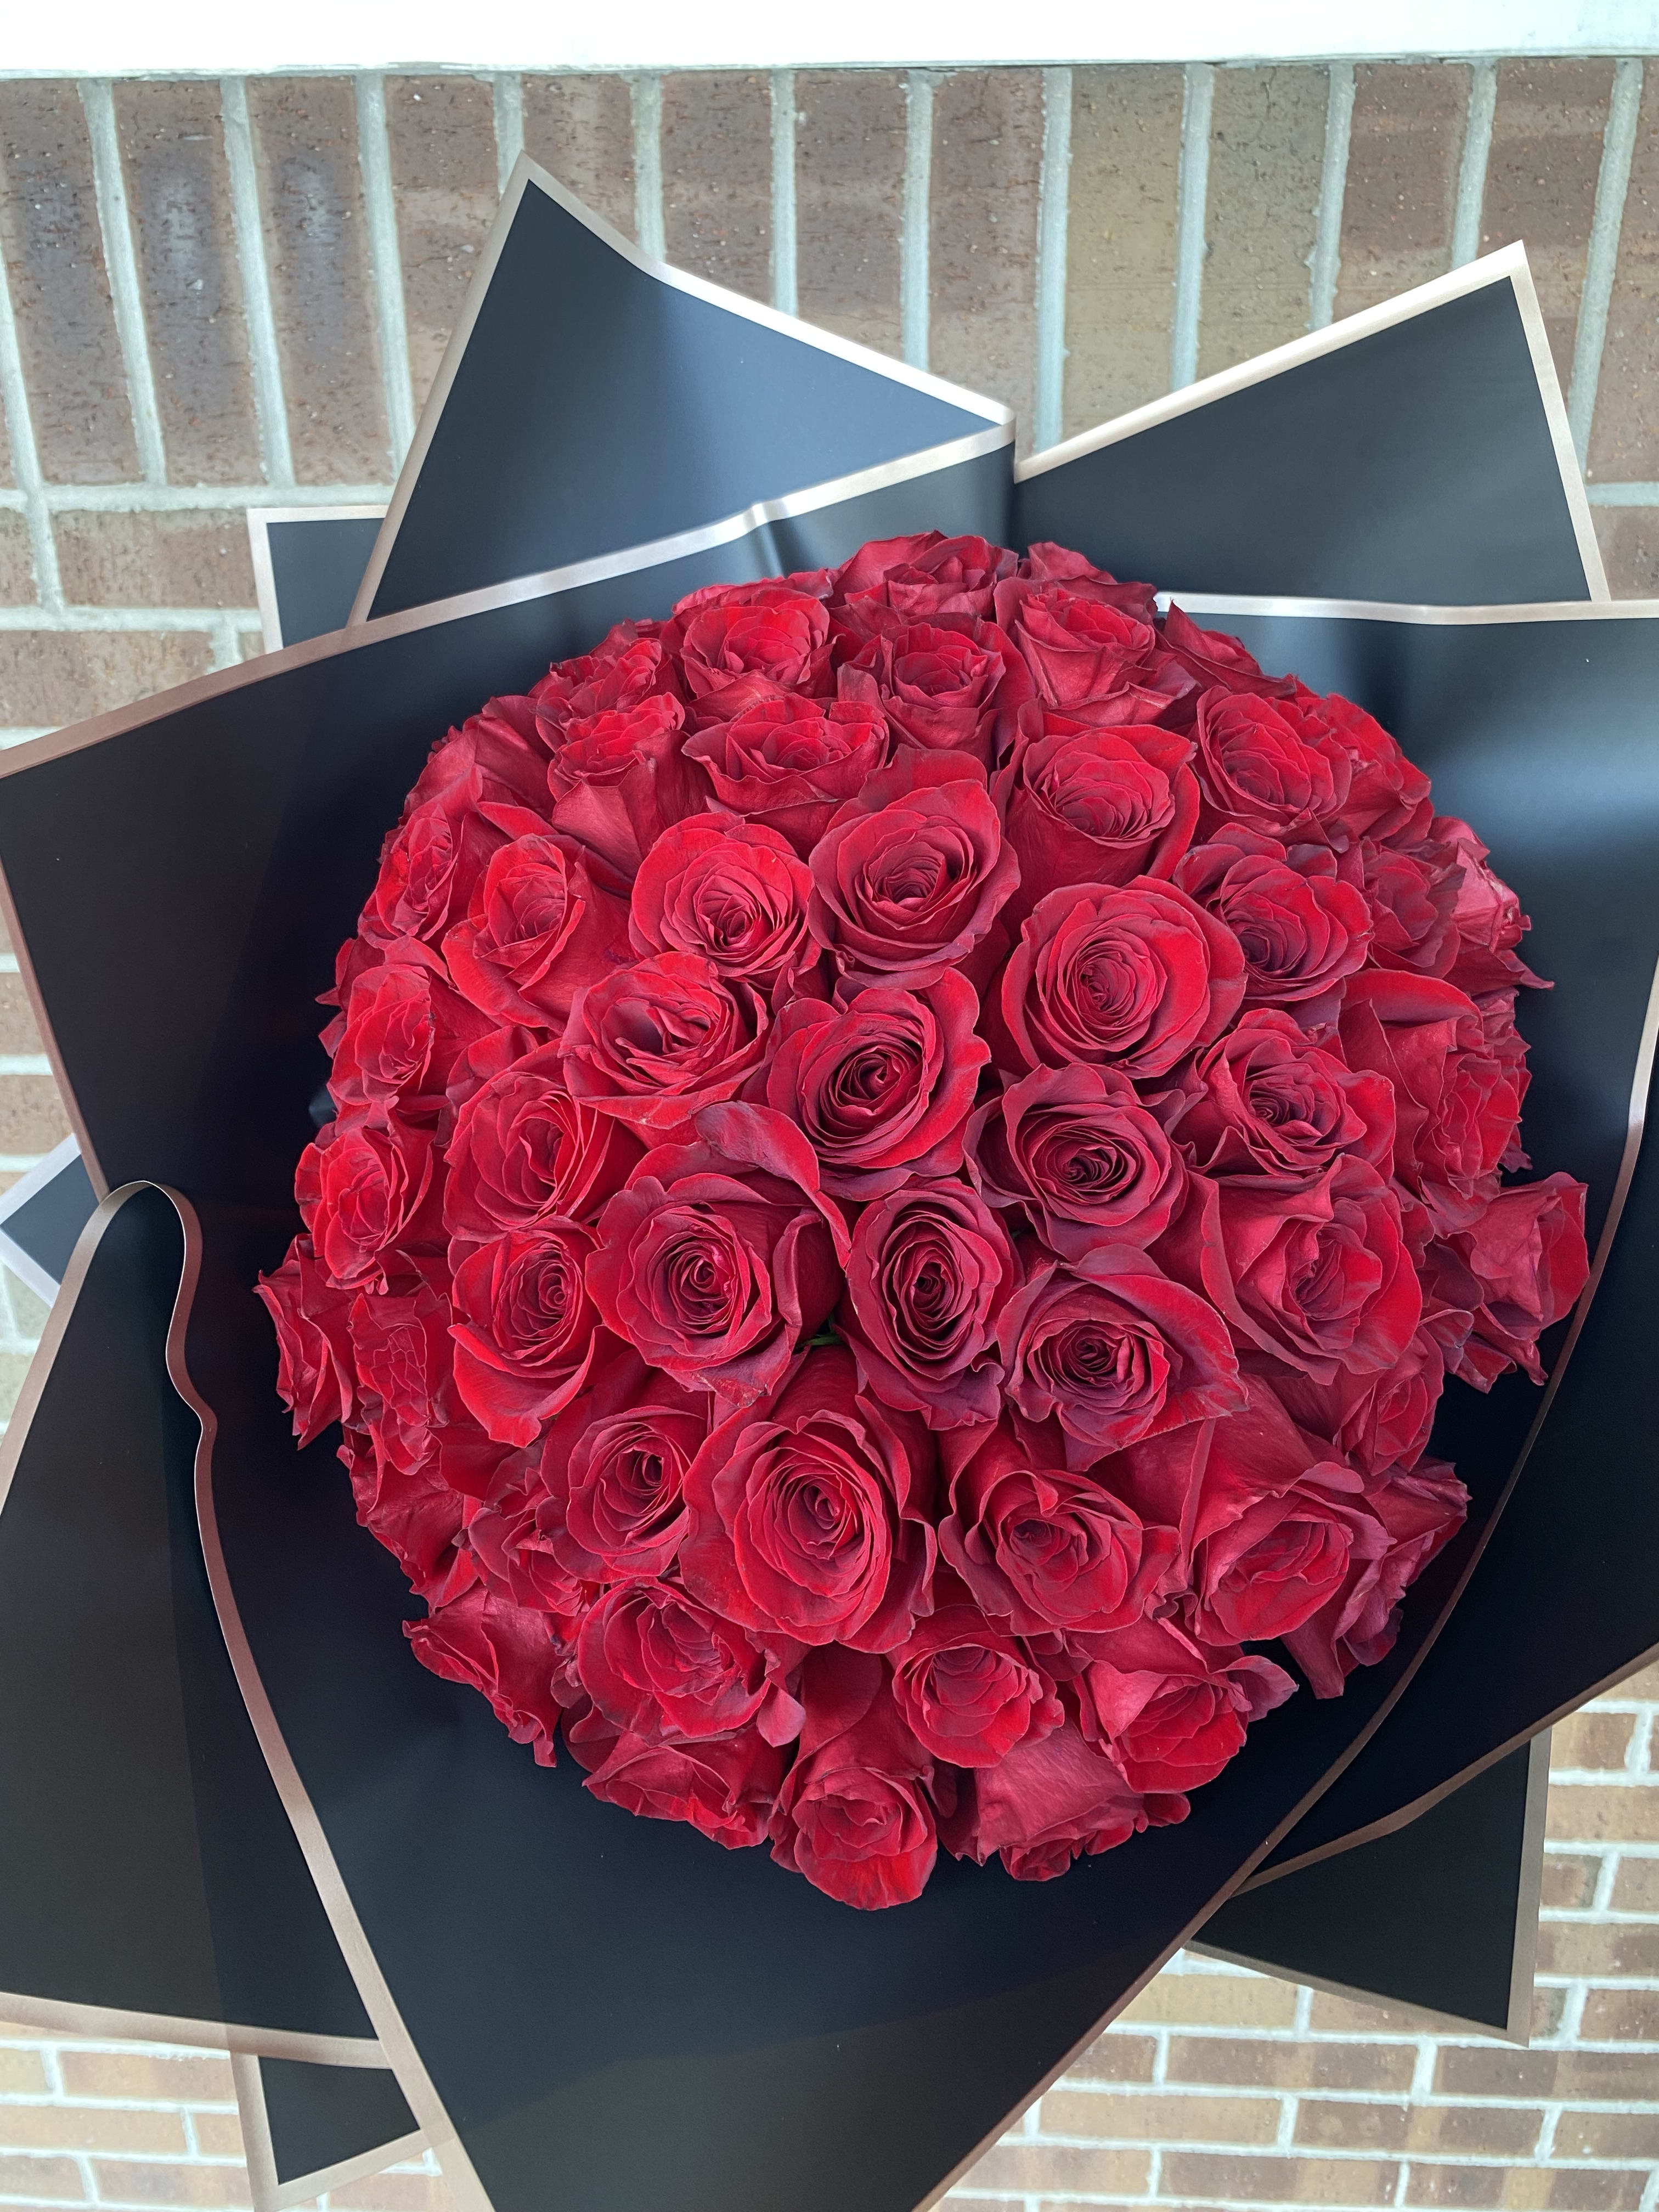 5 Dozen Red Rose Bouquet